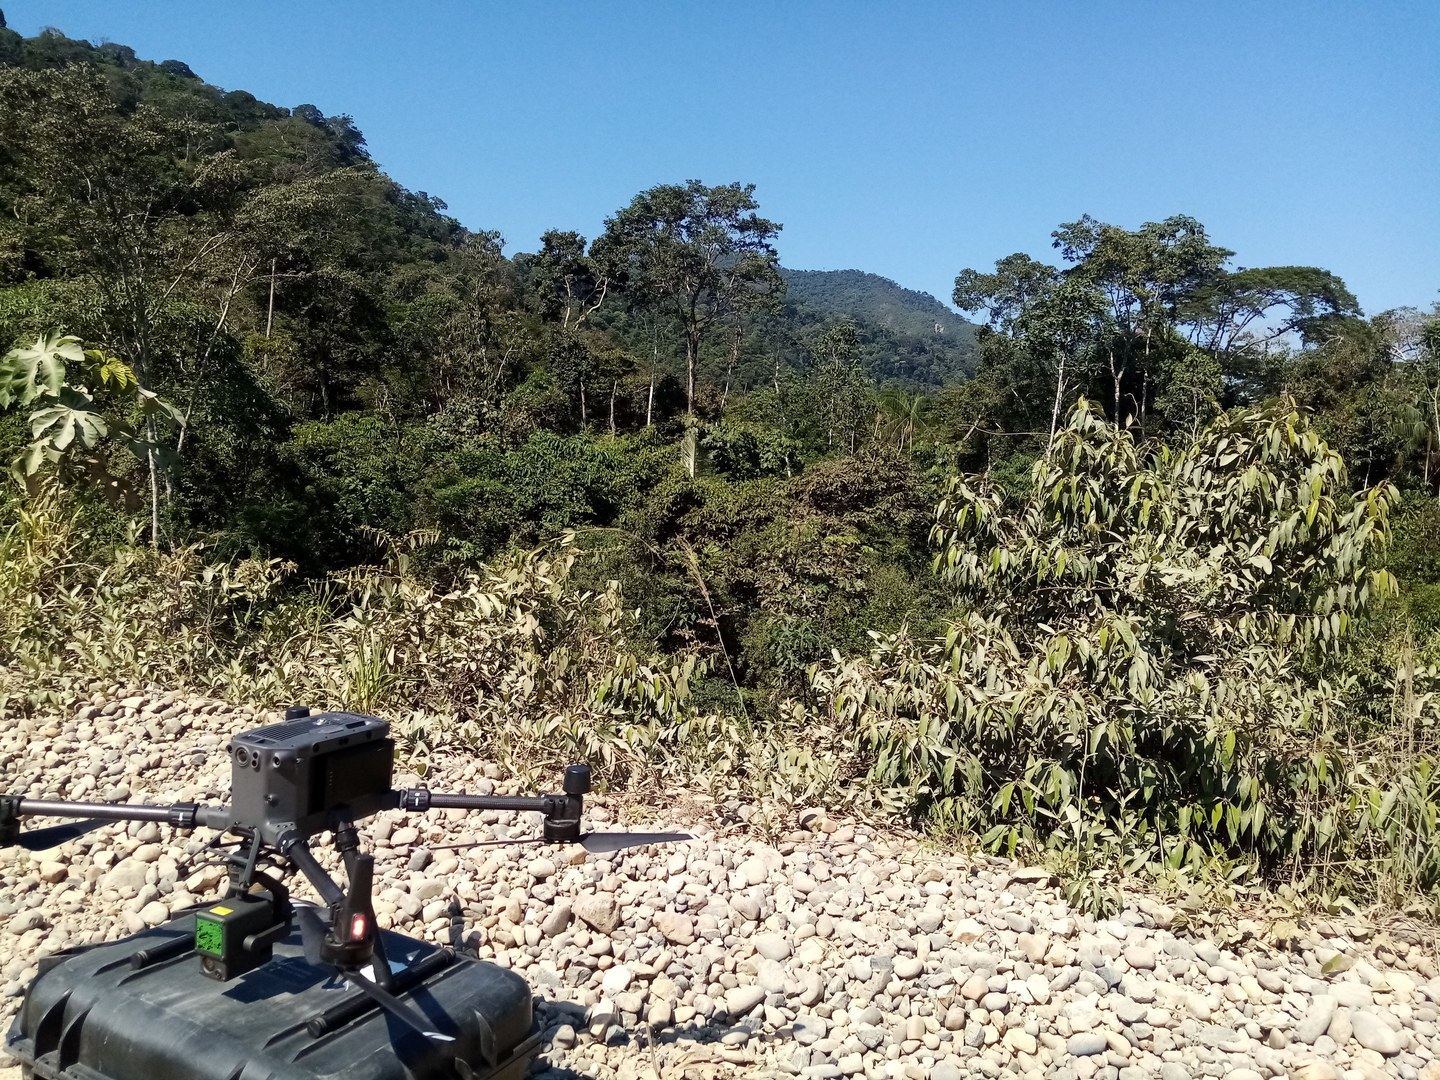 Se alista el dron para sobrevolar el sitio de “La Ruinas” en Macahua, ubicado en la parte alta de la montaña al fondo de la imagen